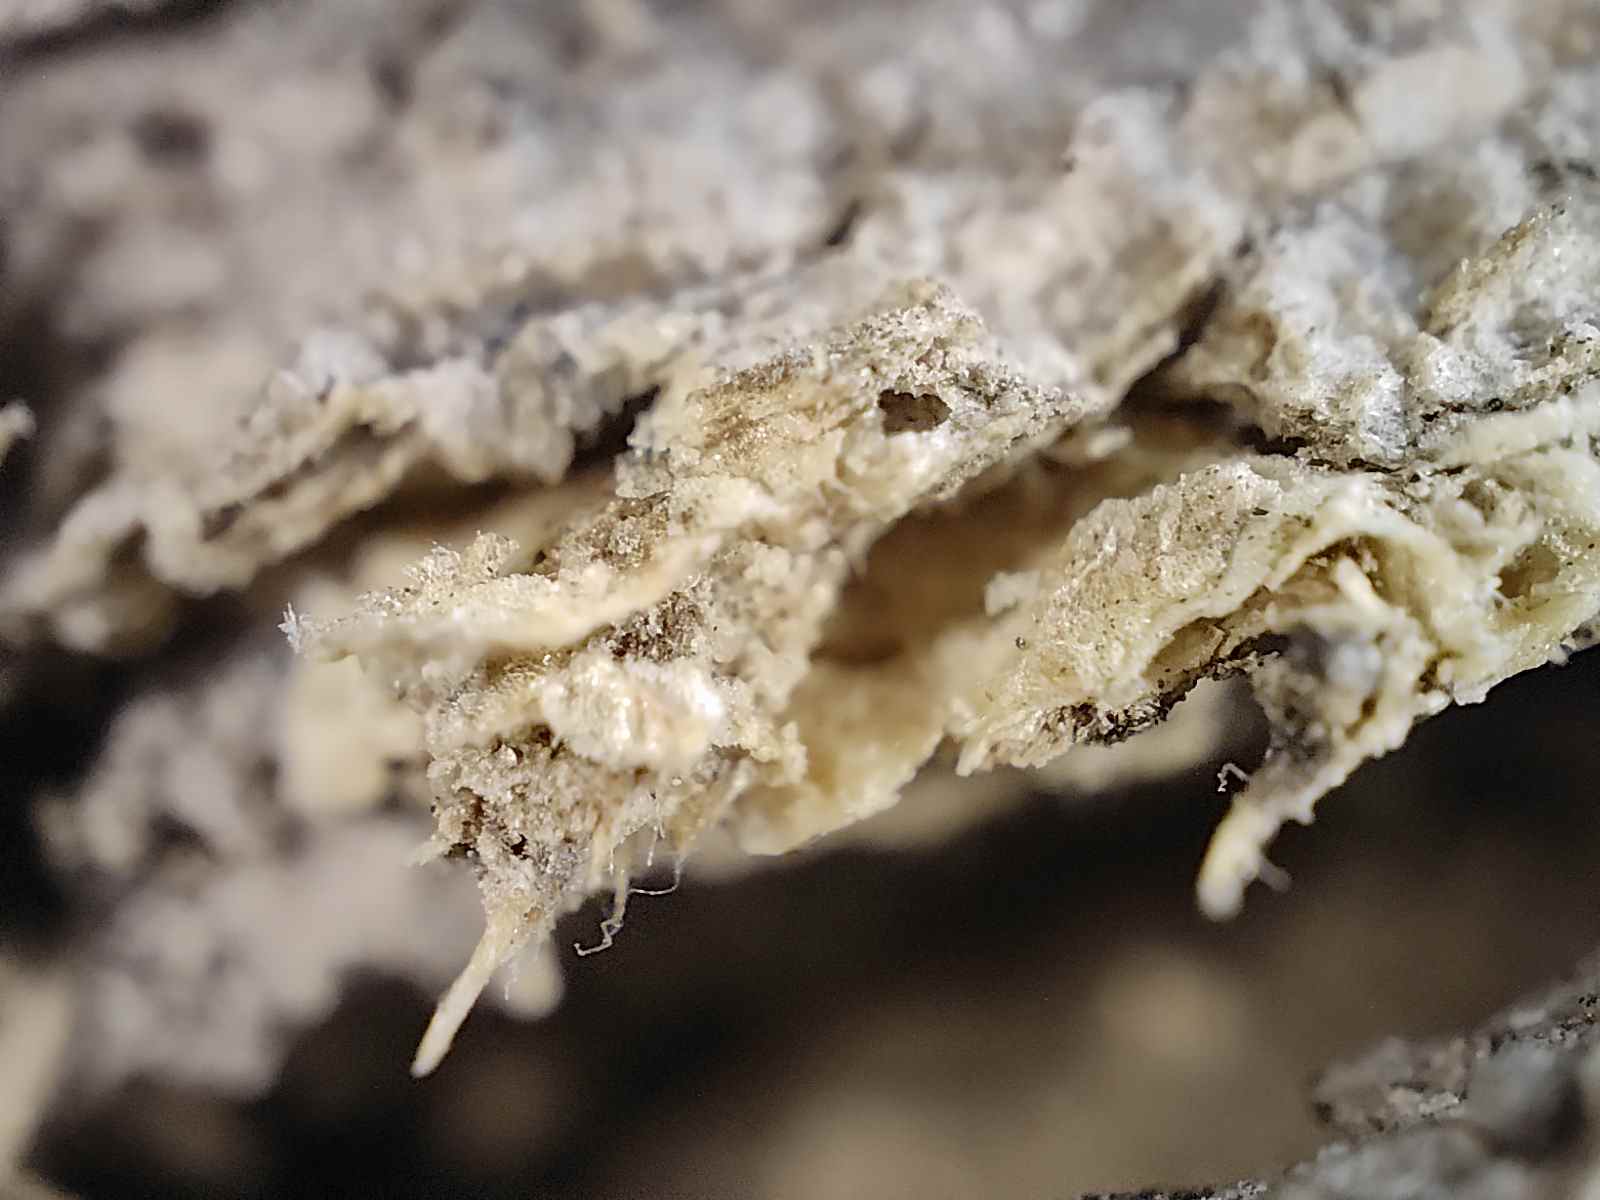 Vue macro d'une écorce d'arbre infestée de termites photographiée avec la caméra microscope du Realme GT 2 Pro.